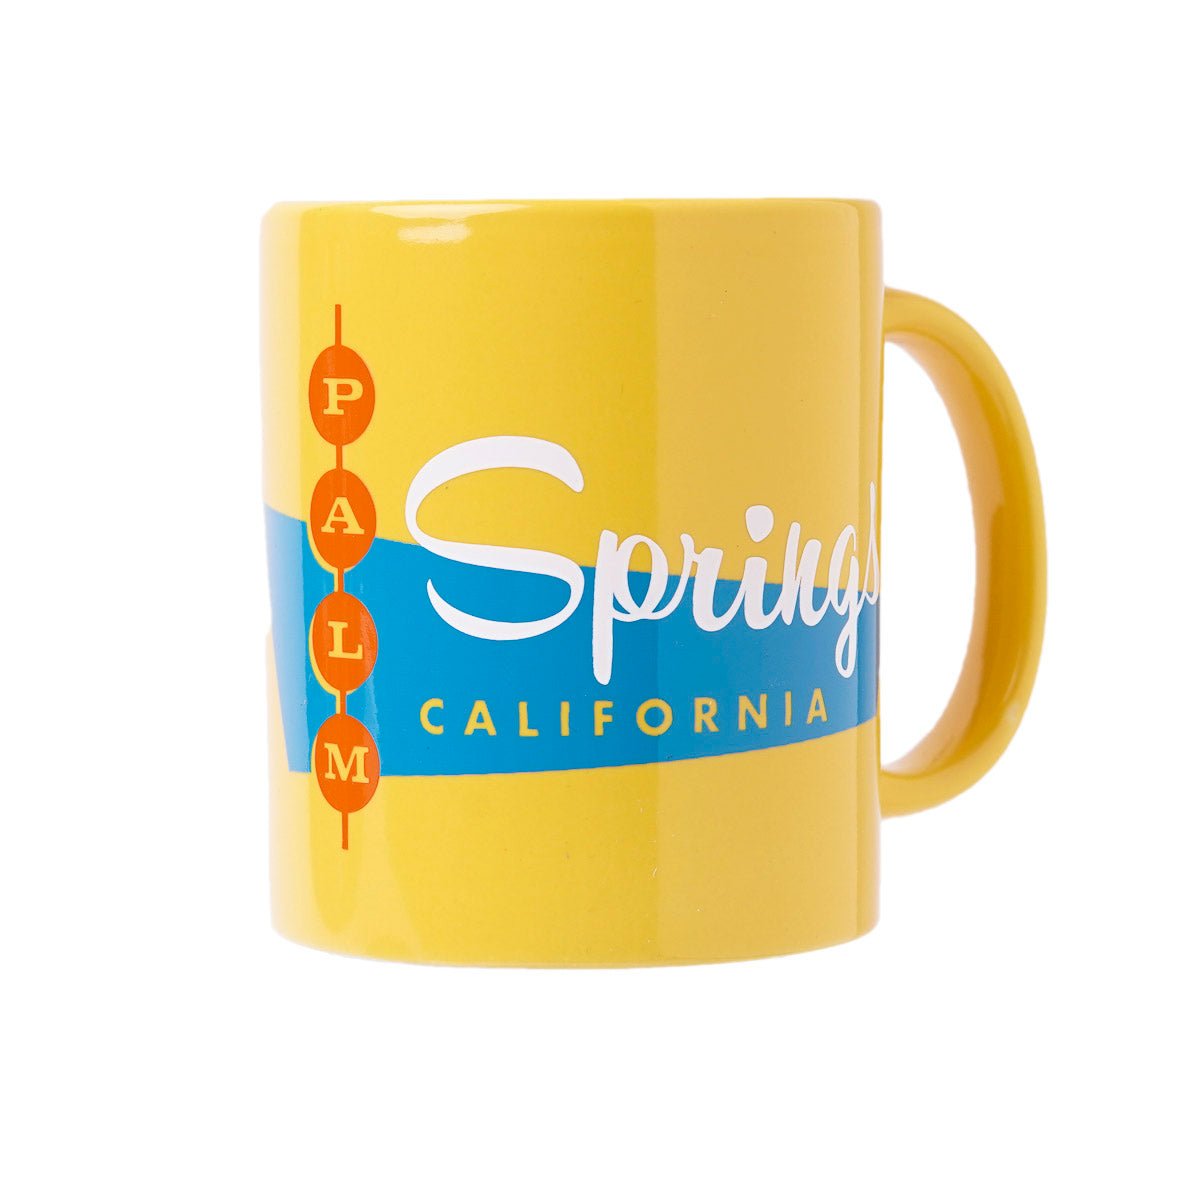 Palm Springs Retro Diner Design Coffee Mug - Destination PSP